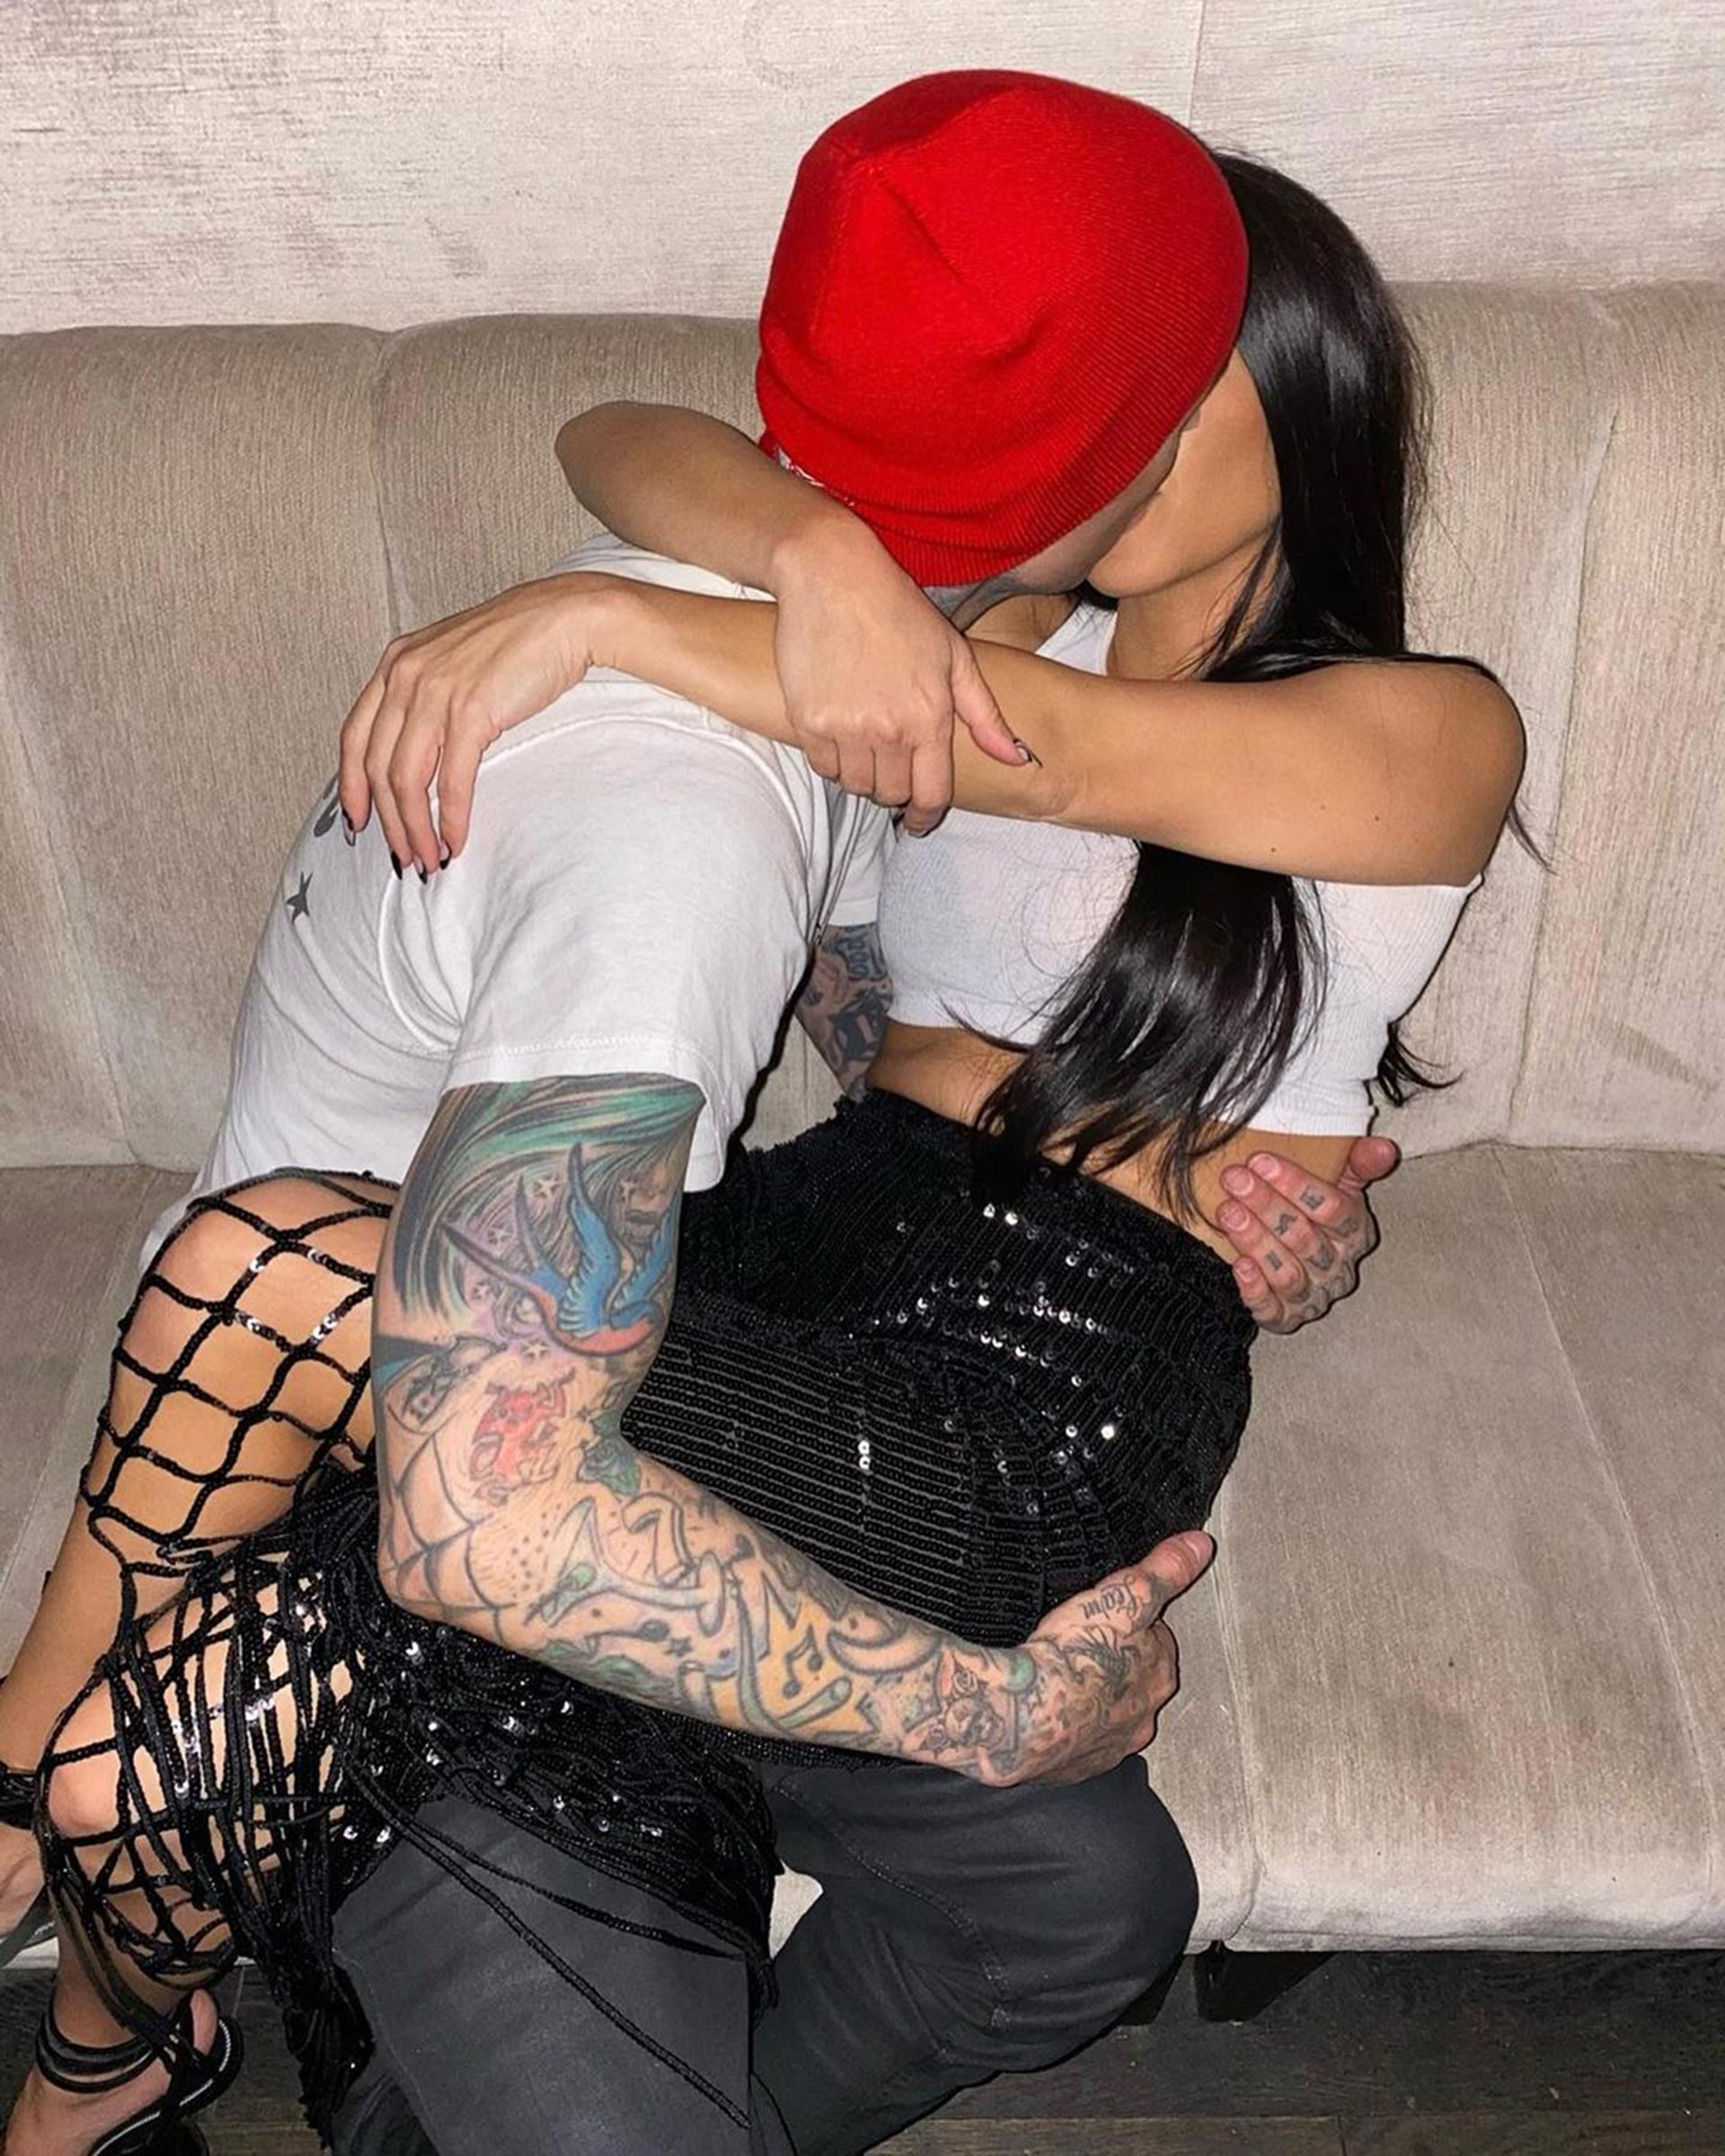 El baterista de Blink-182, Travis Barker, rindió homenaje a su novia Kourtney Kardashian en su cumpleaños número 42 con un video más que sugerente en Instagram